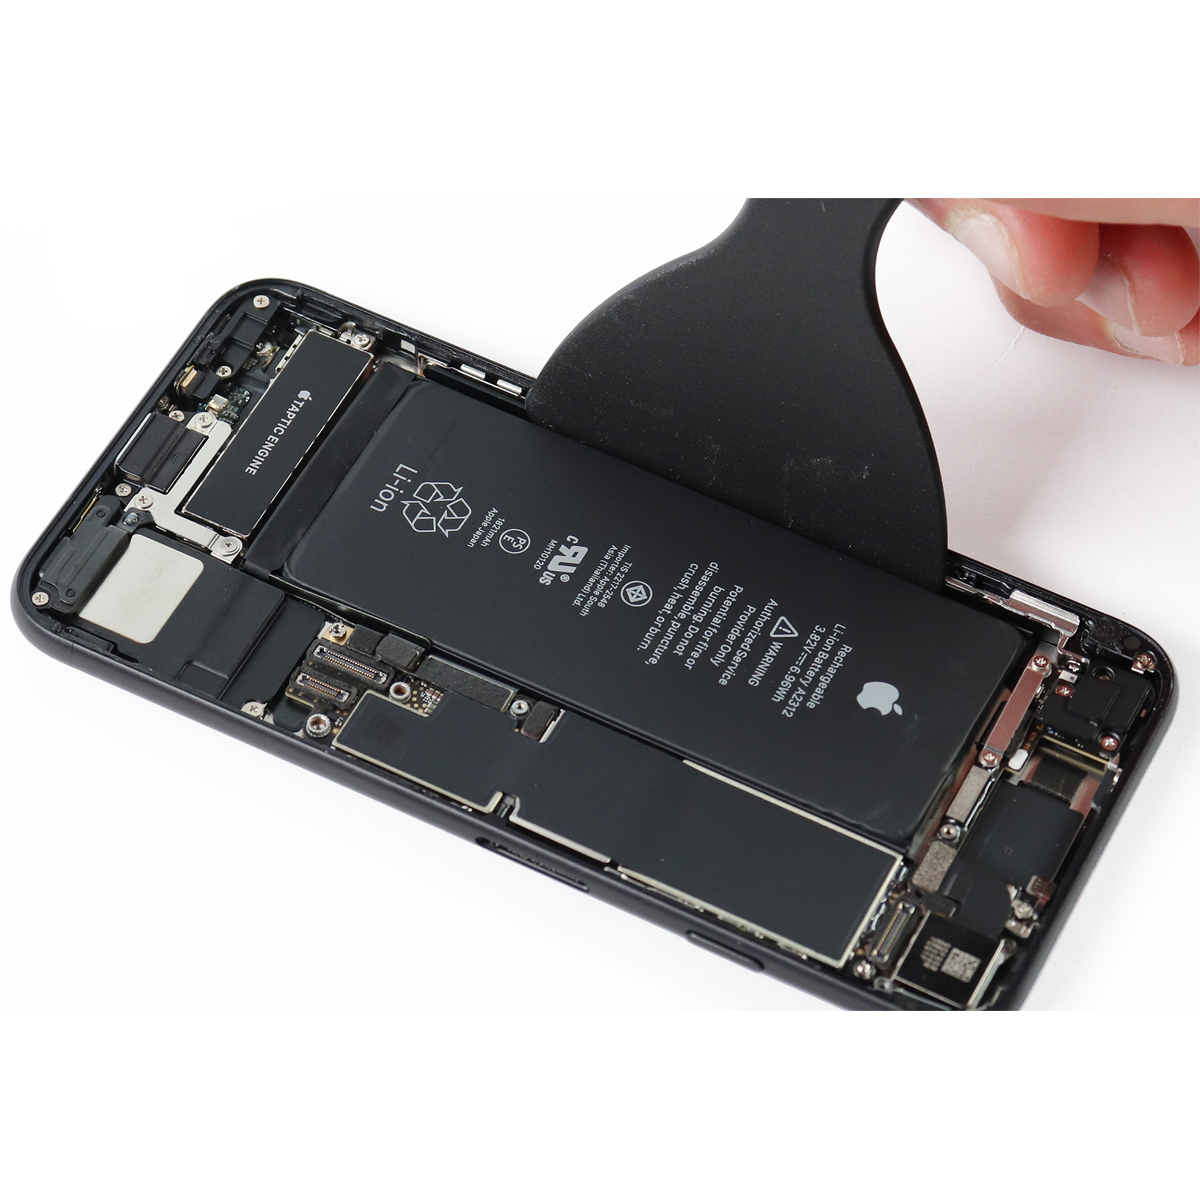 Cambiar Batería iPhone SE 2020